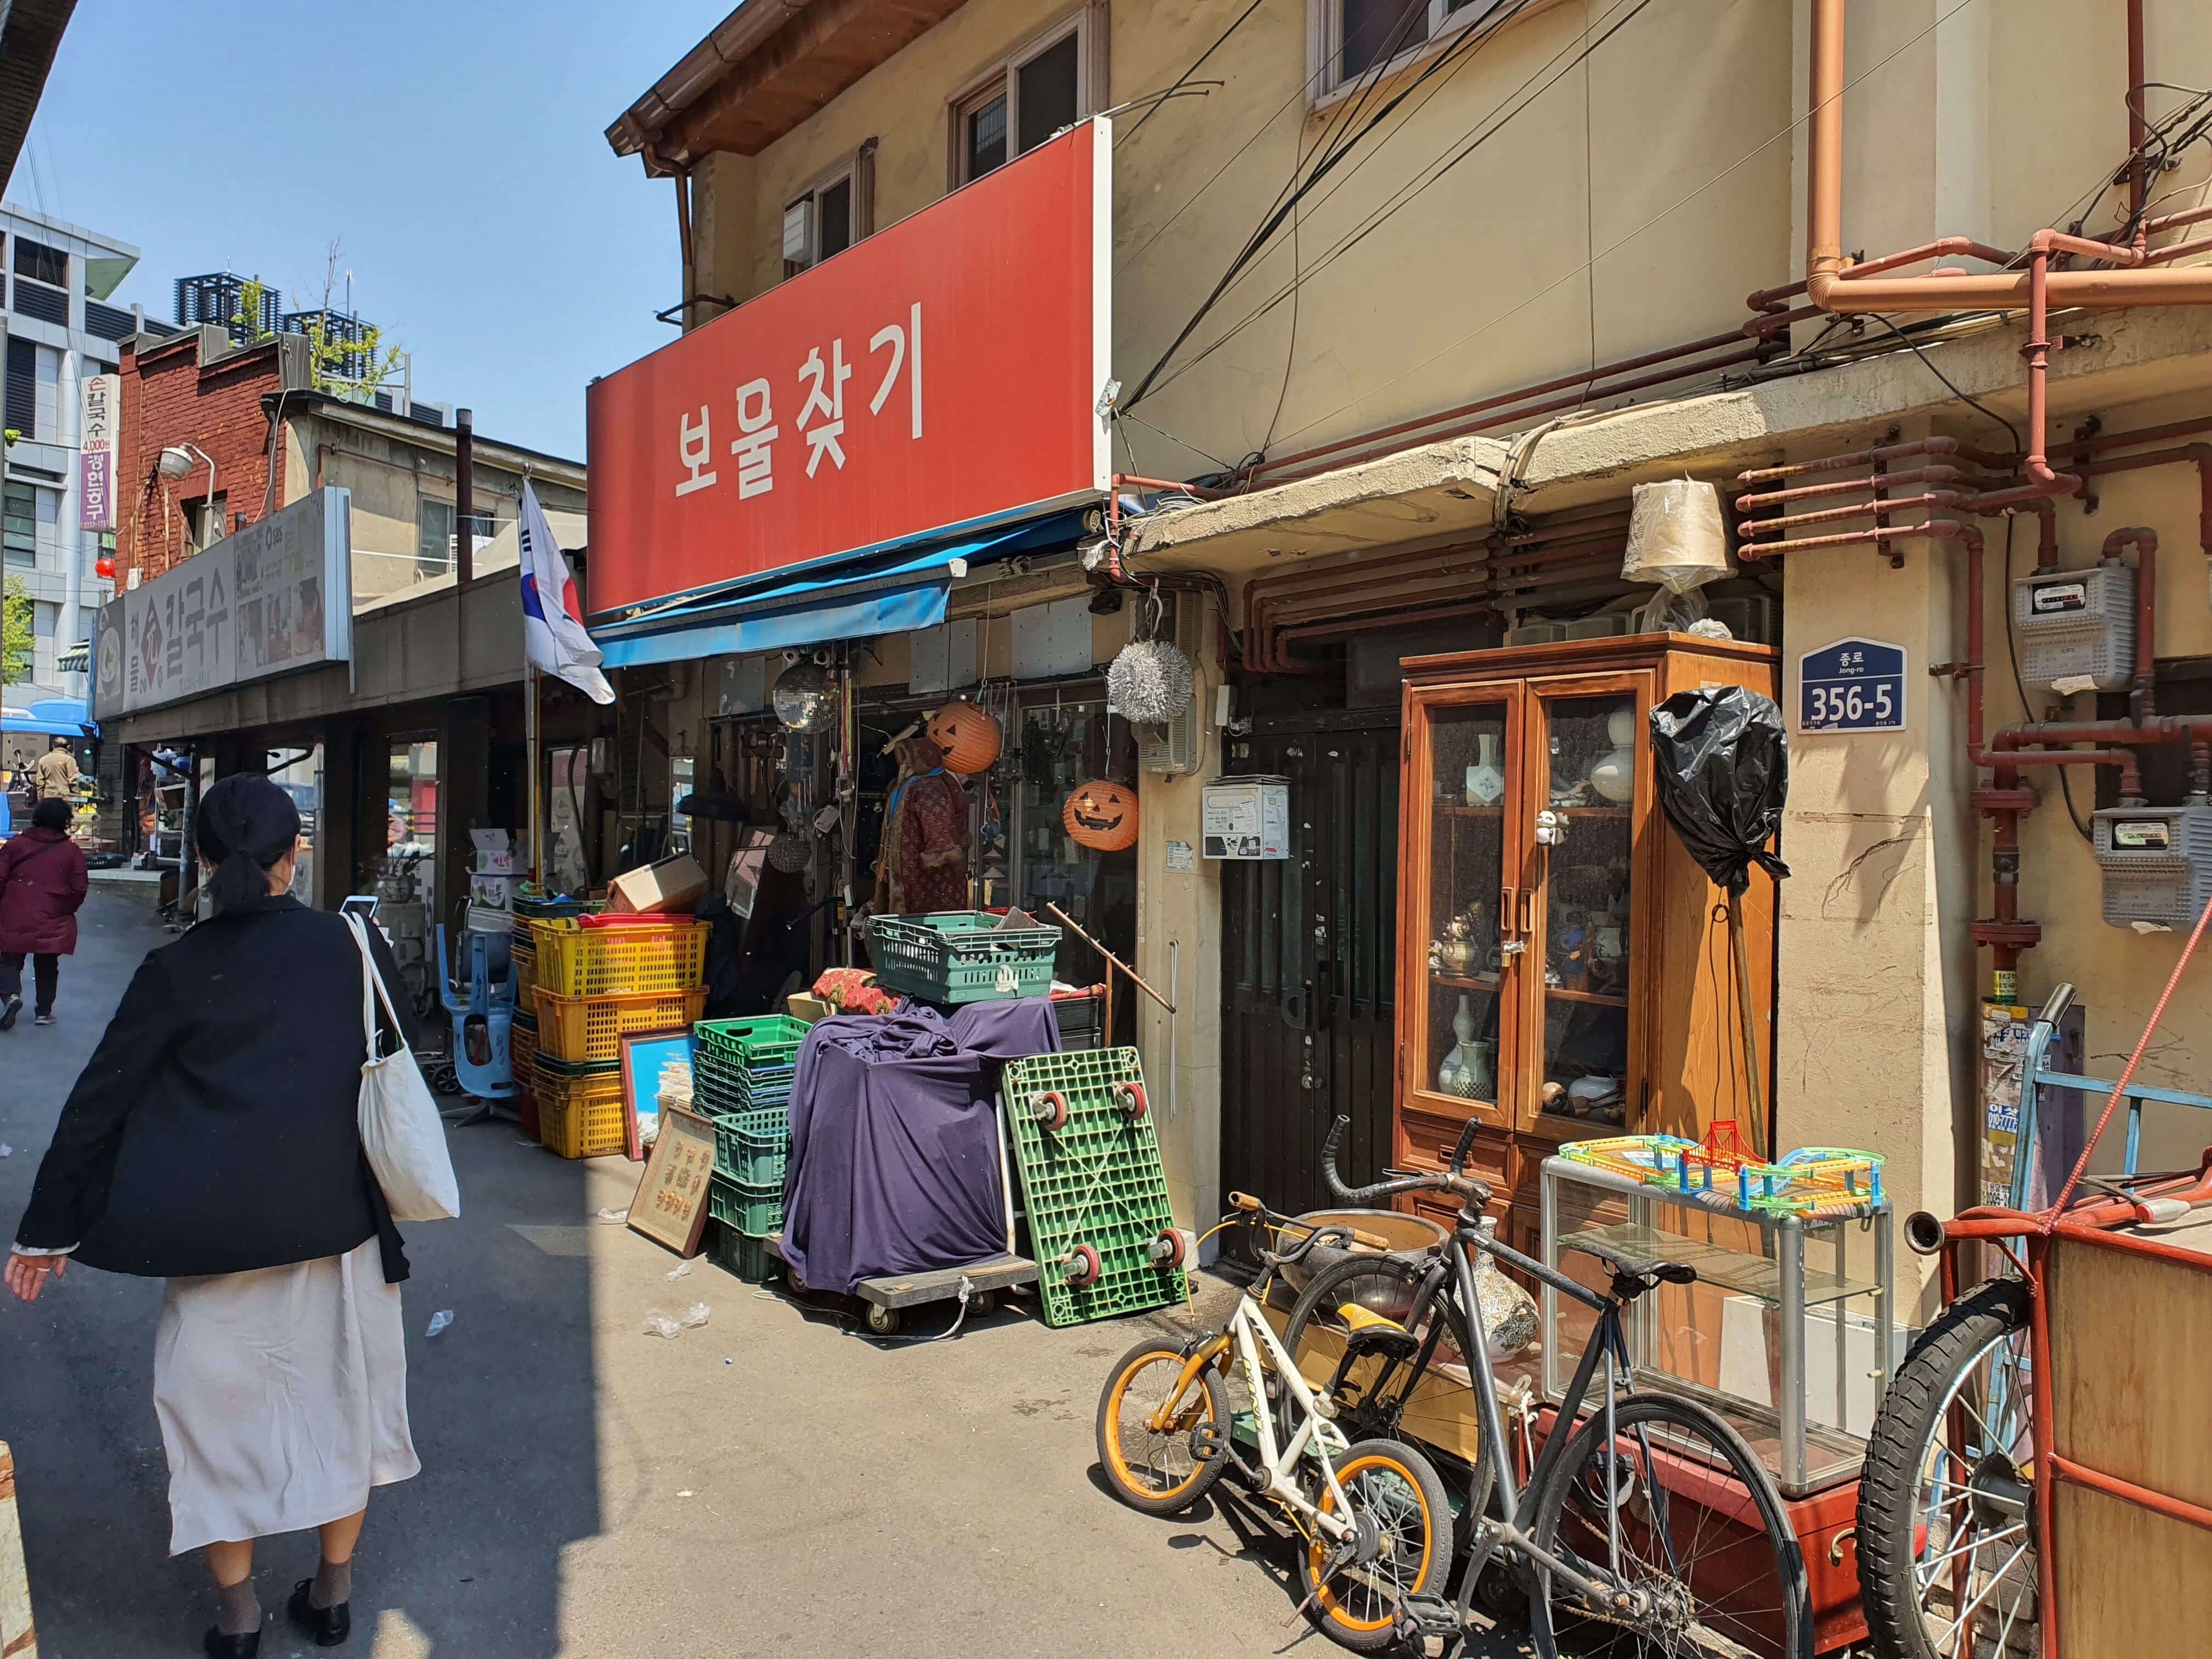 오래된 물건들이 보물찾기라는 상점 앞에 놓여져 있다 빨간 간판의 하얀 글씨인 보물찾기 상점이 오른편에 보인다.